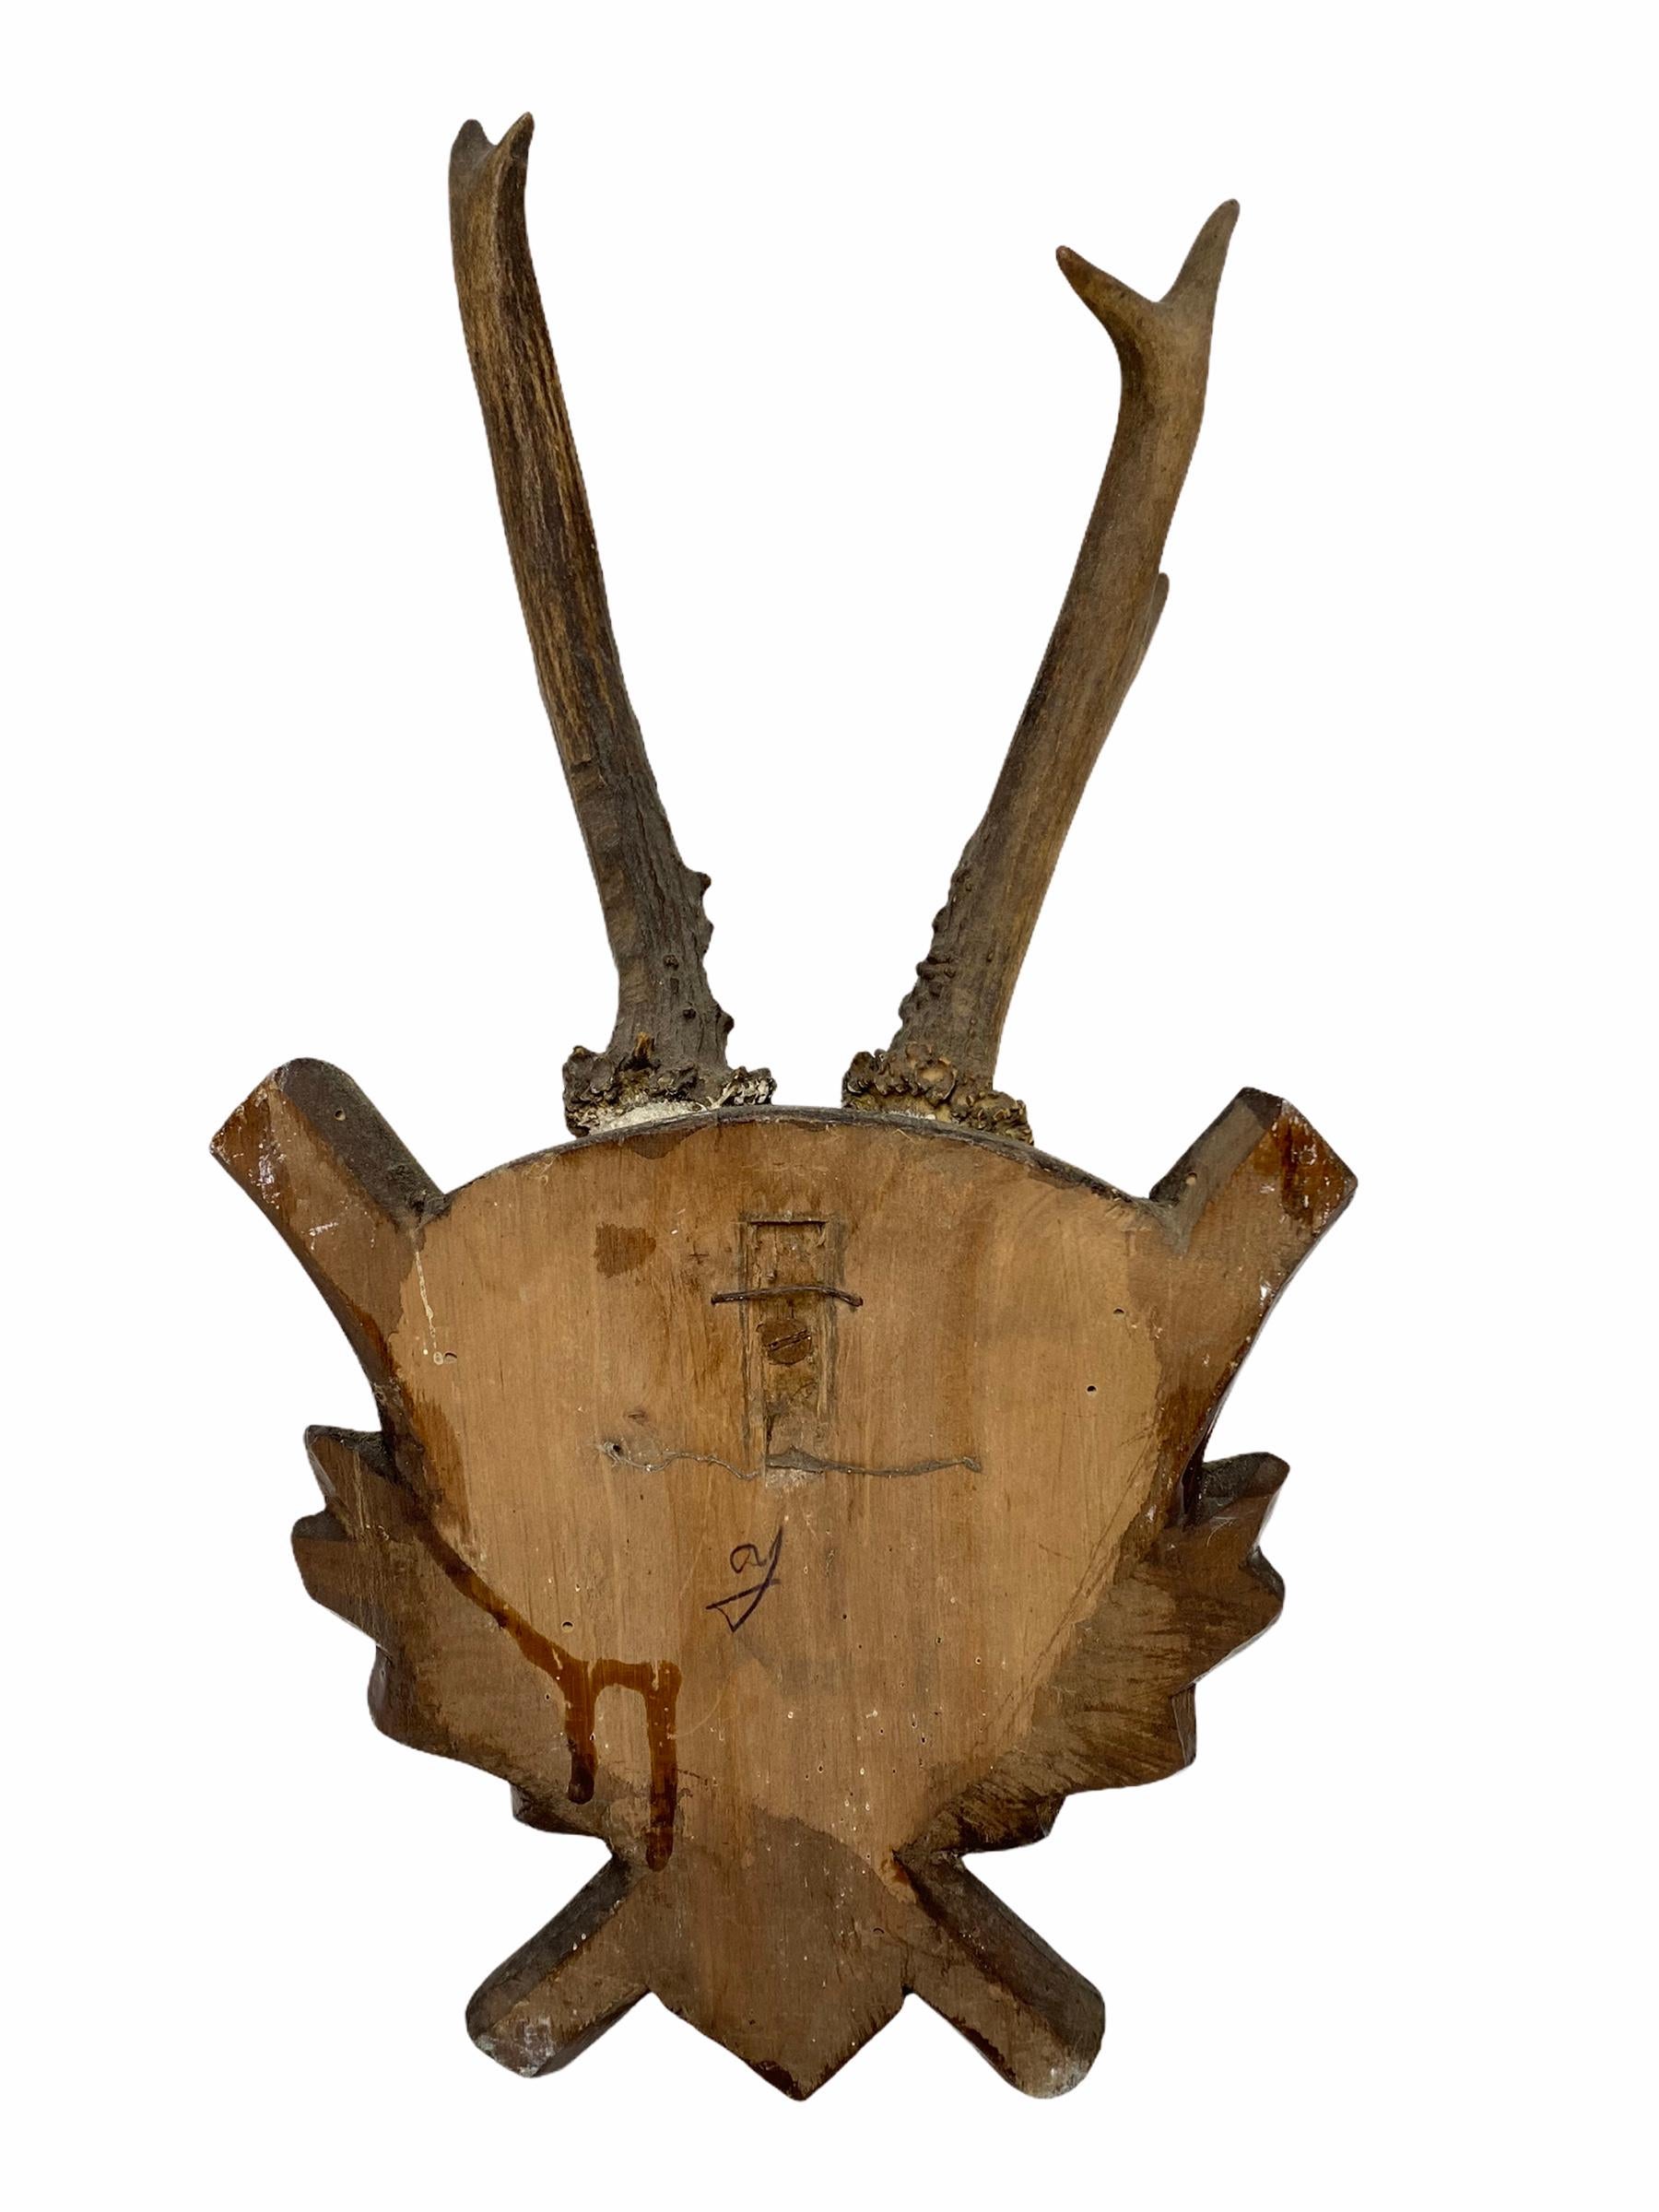 Hand-Carved Antique Black Forest Deer Antler Trophy on Wood Carved Plaque, Austria, 1890s